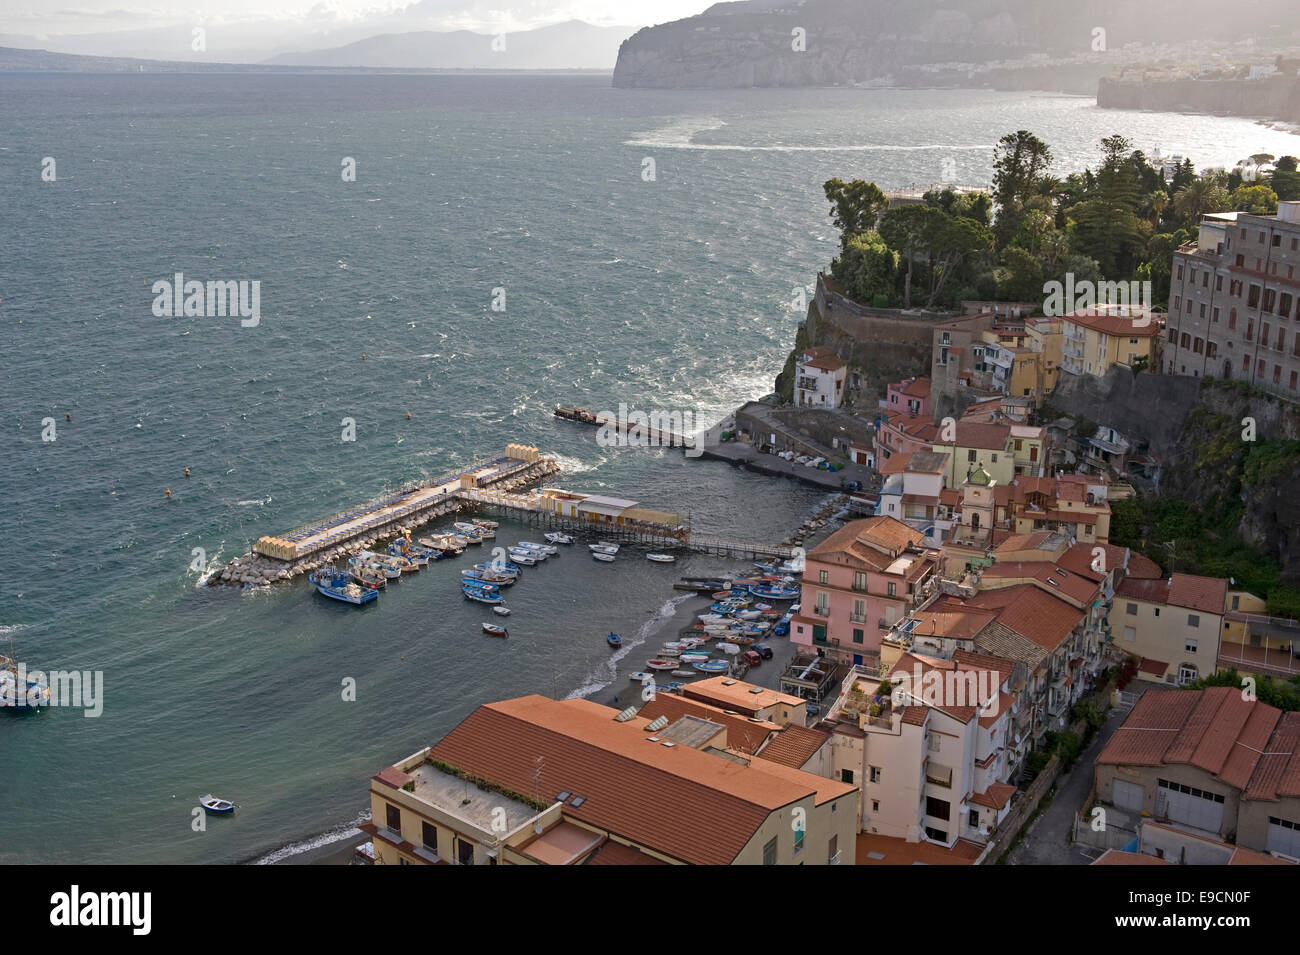 Regarder sur le Picolo Grande, le petit port de pêche dans la région de Sorrente, dans la baie de Naples, sur un beau jour avec mer agitée ou Banque D'Images